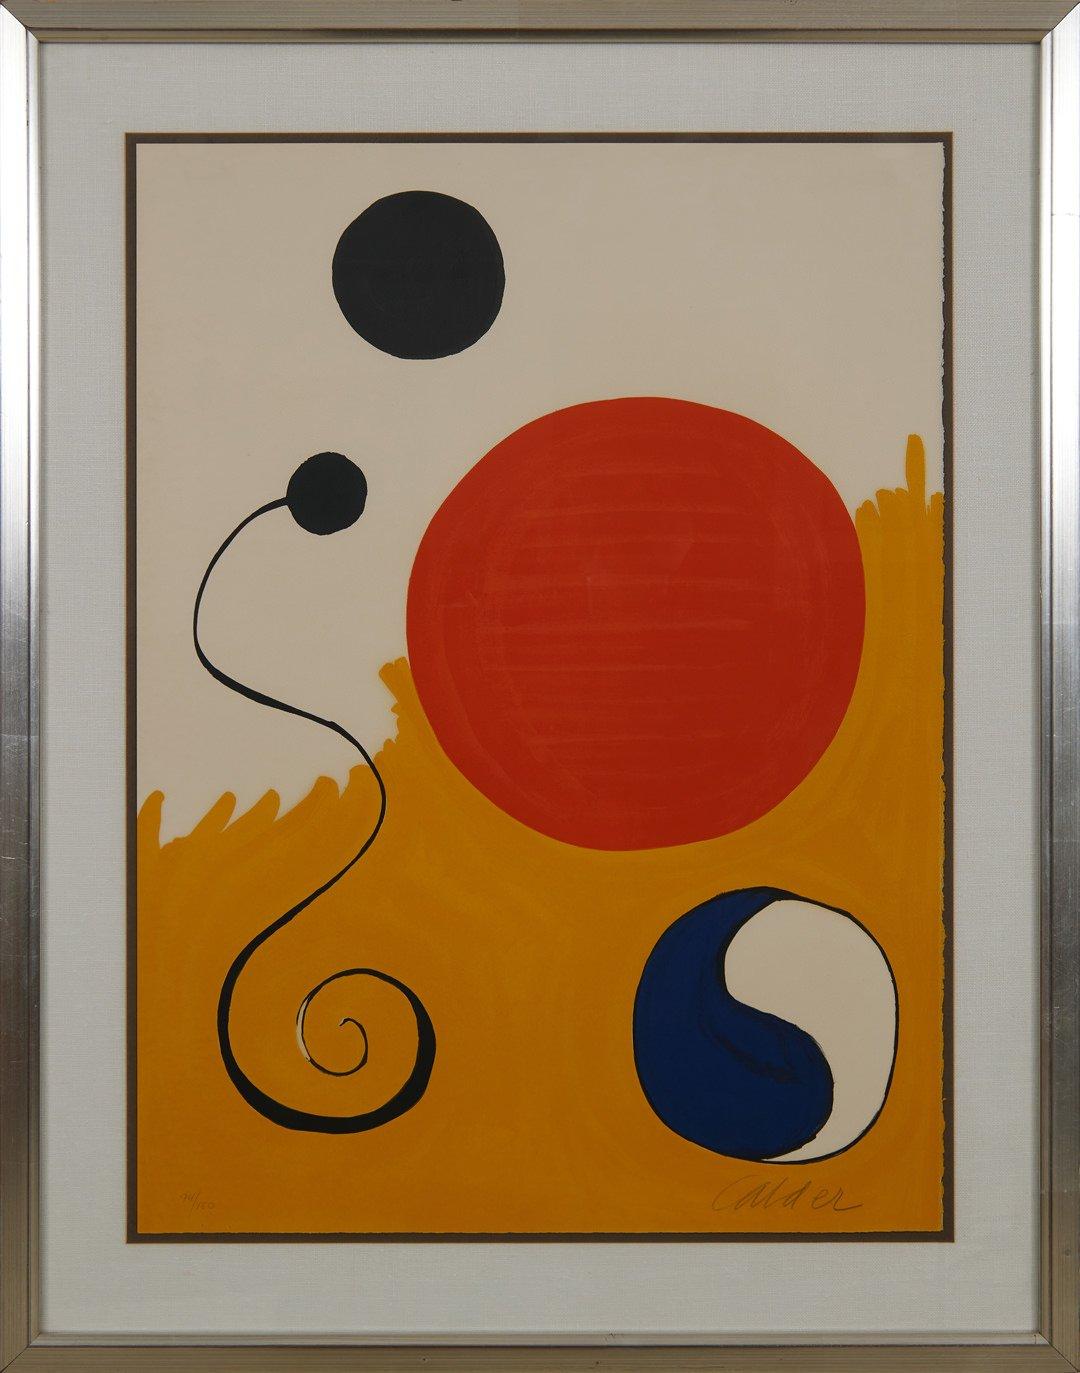 Sphère rouge sur fond jaune, lithographie abstraite moderne du milieu du siècle dernier - Print de Alexander Calder